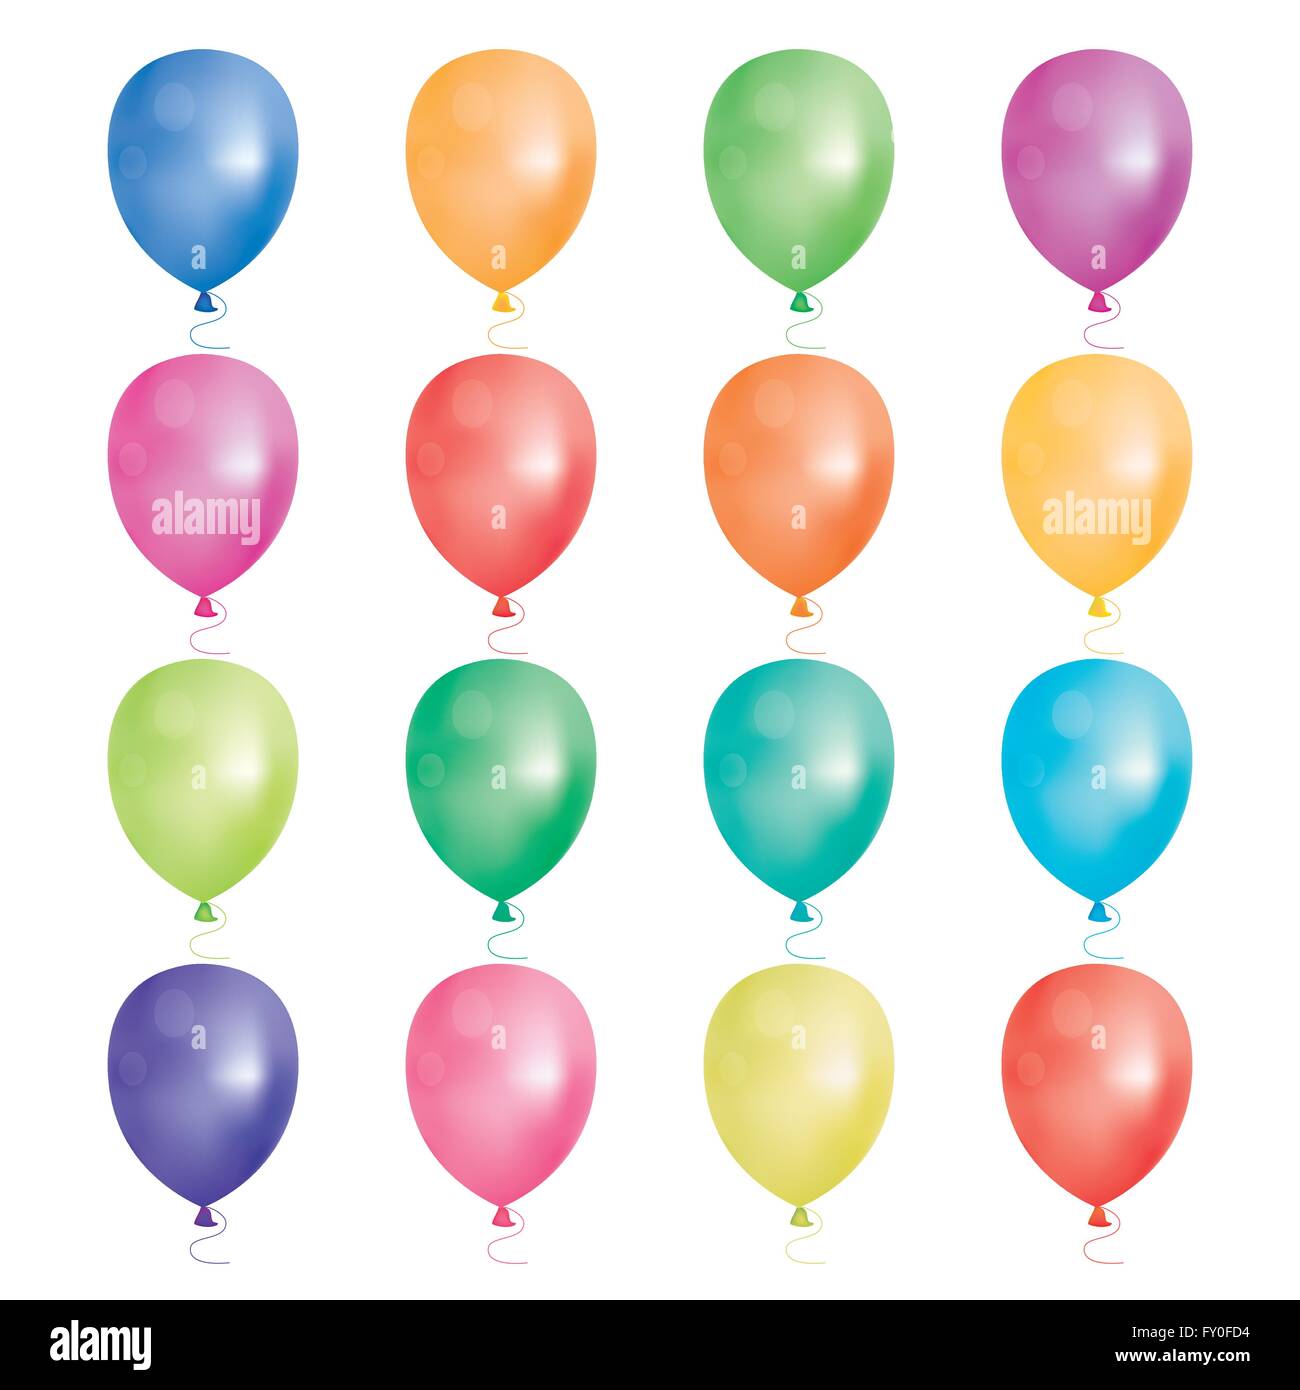 Satz von 16 Party Luftballons. Vektor-Illustration. Ballons verschiedene Farben isoliert auf weißem Hintergrund. Stock Vektor